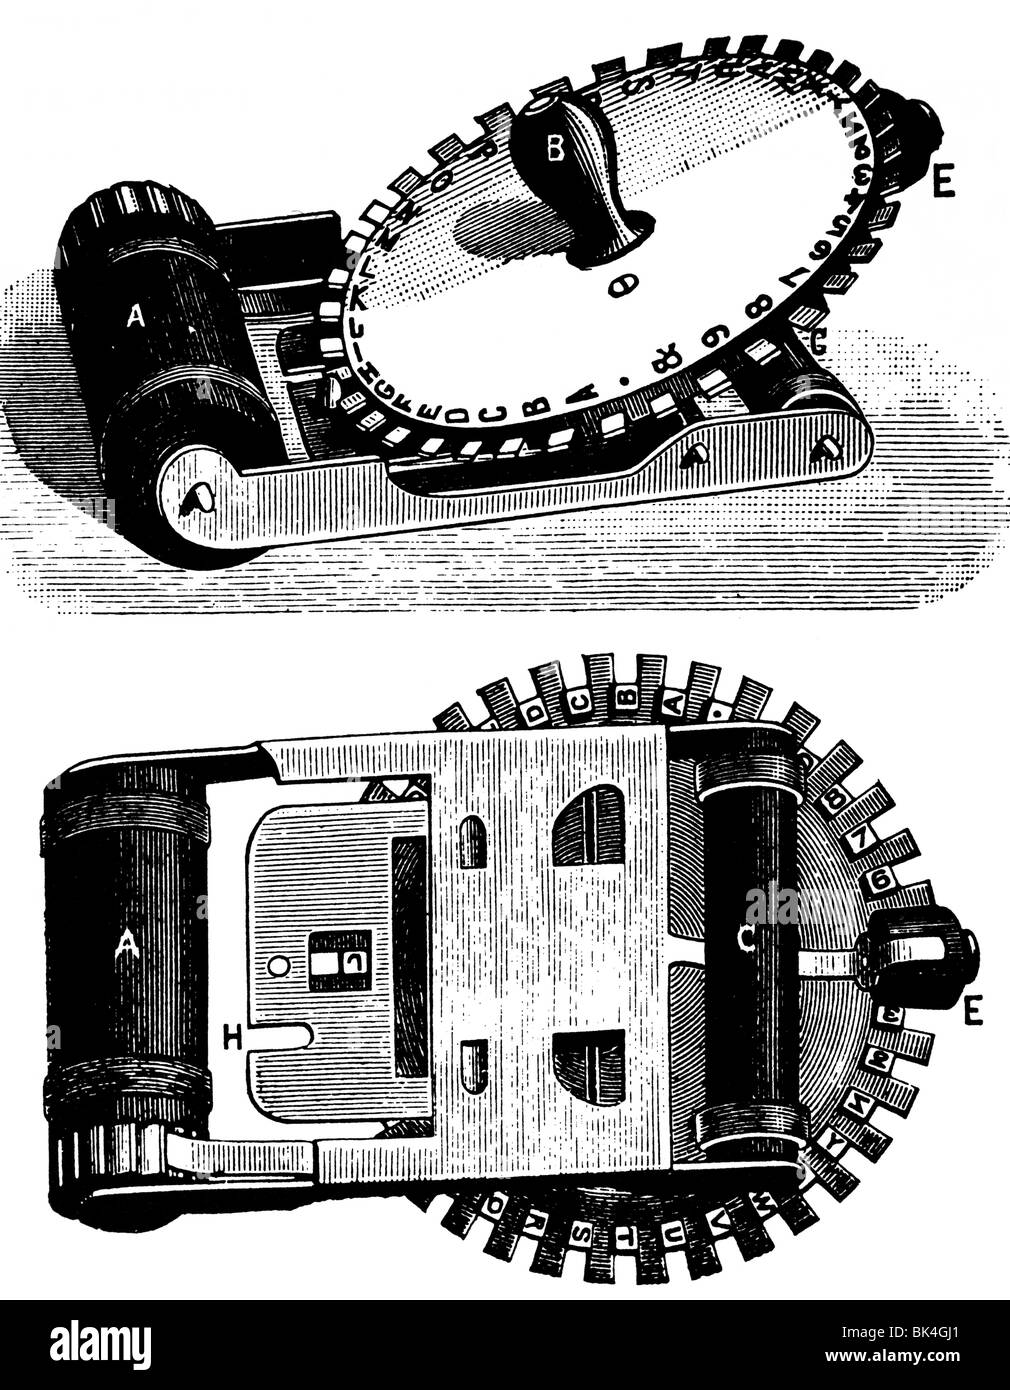 Die Miniatur-Tasche-Schreibmaschine, 1890 Stockfotografie - Alamy